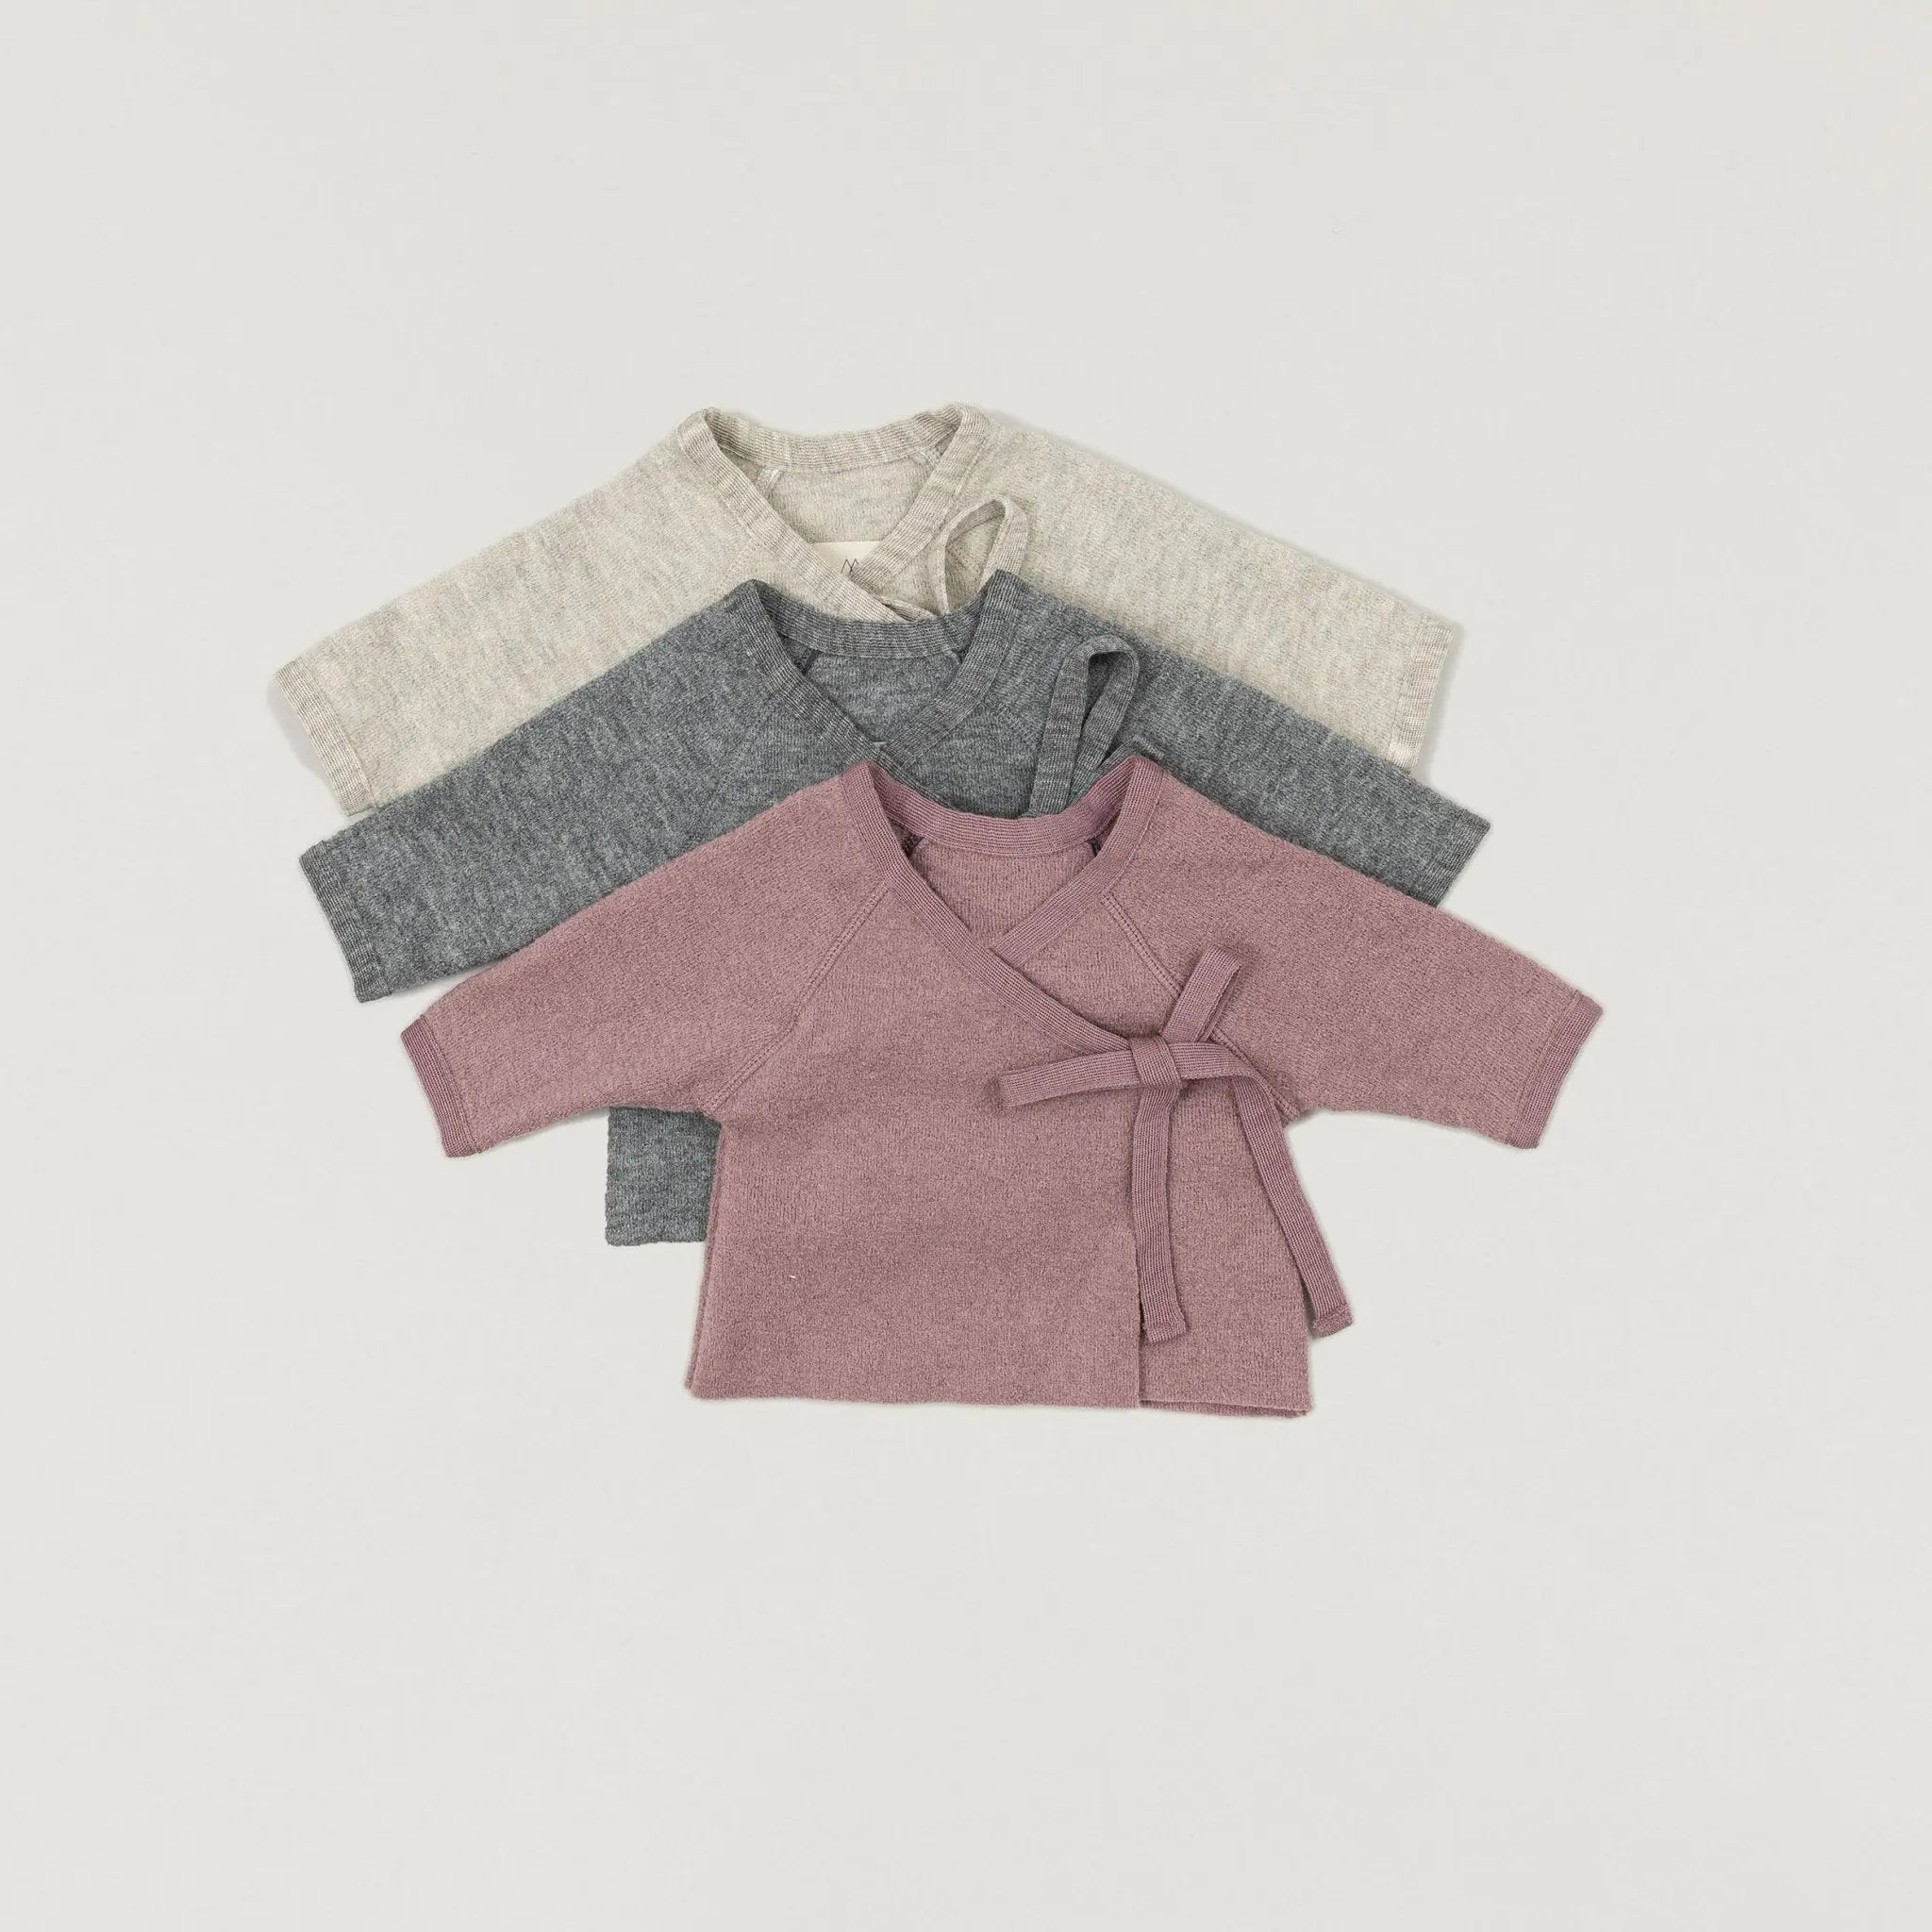 Halfen Wollwalk-Decke für die Babyschale in grau